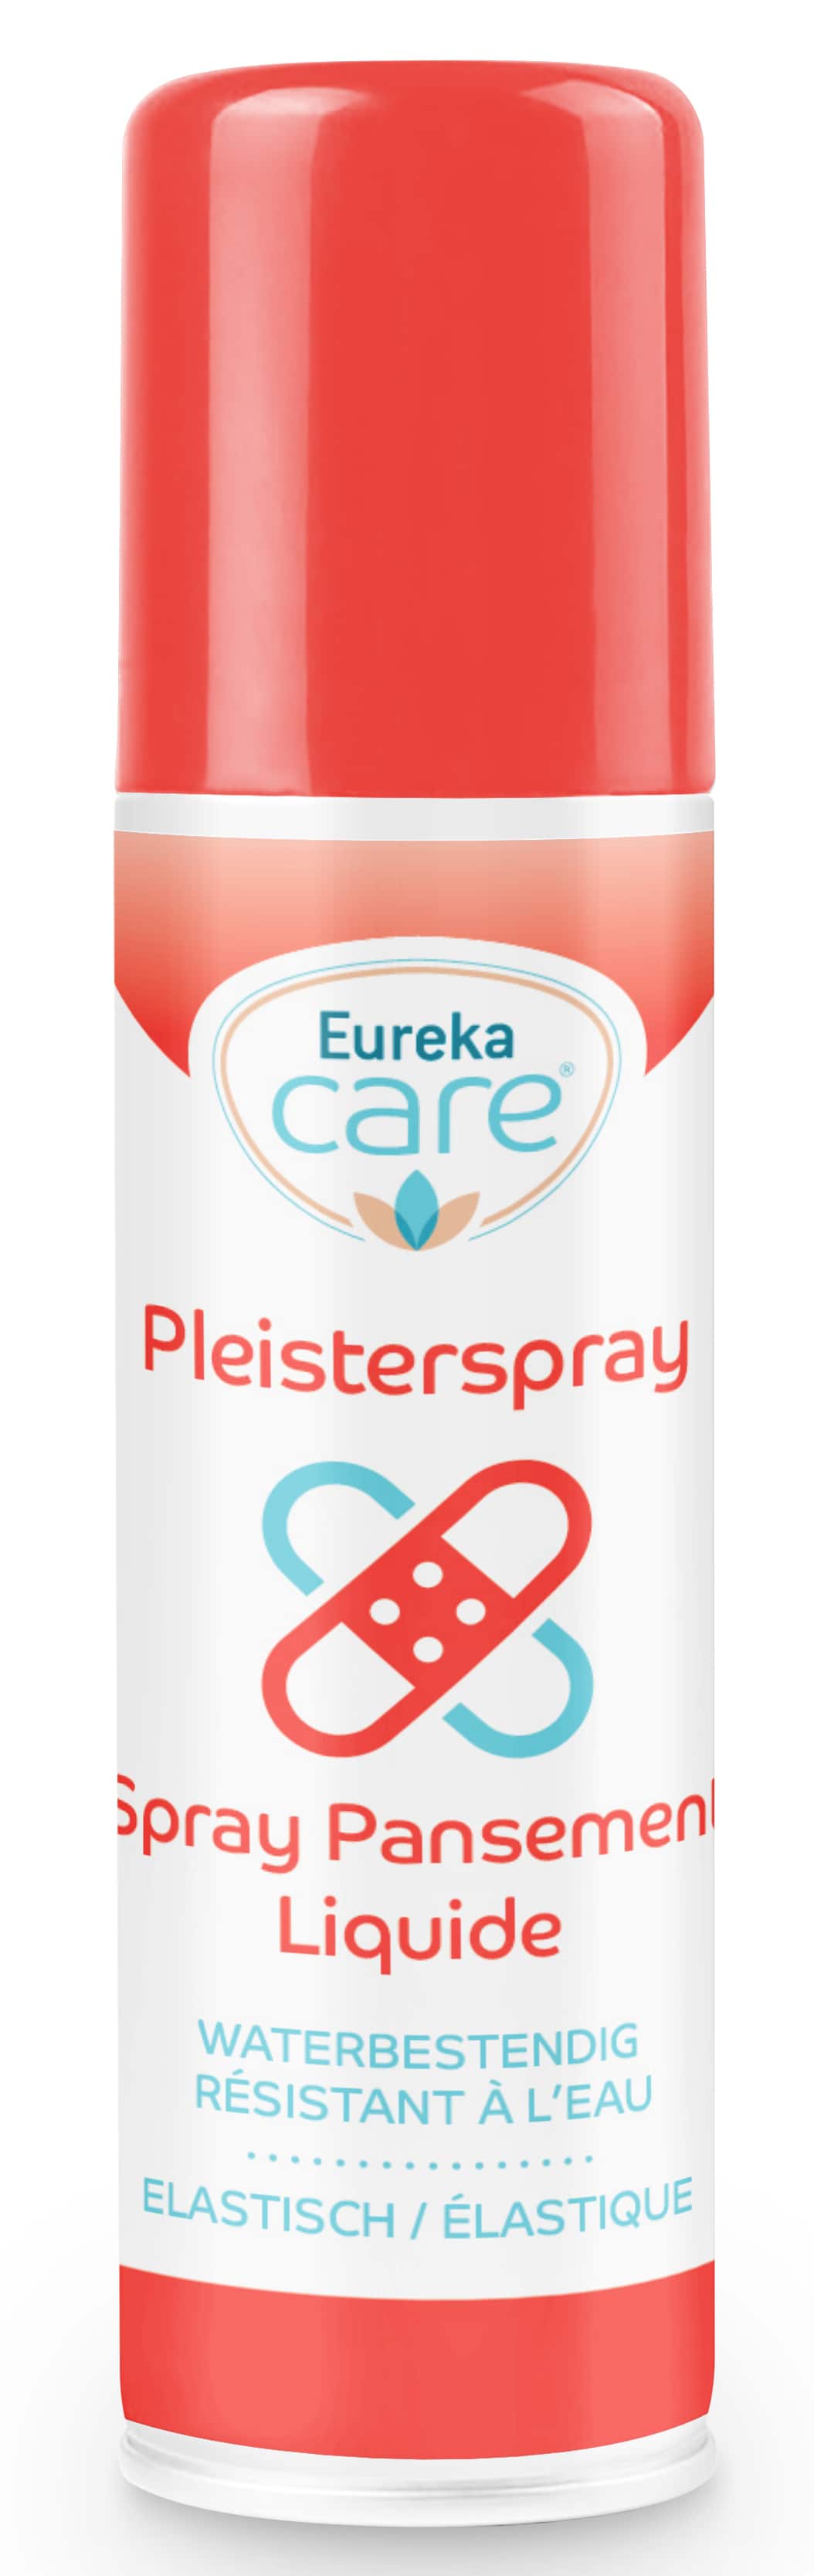 Eureka Care Pleisterspray